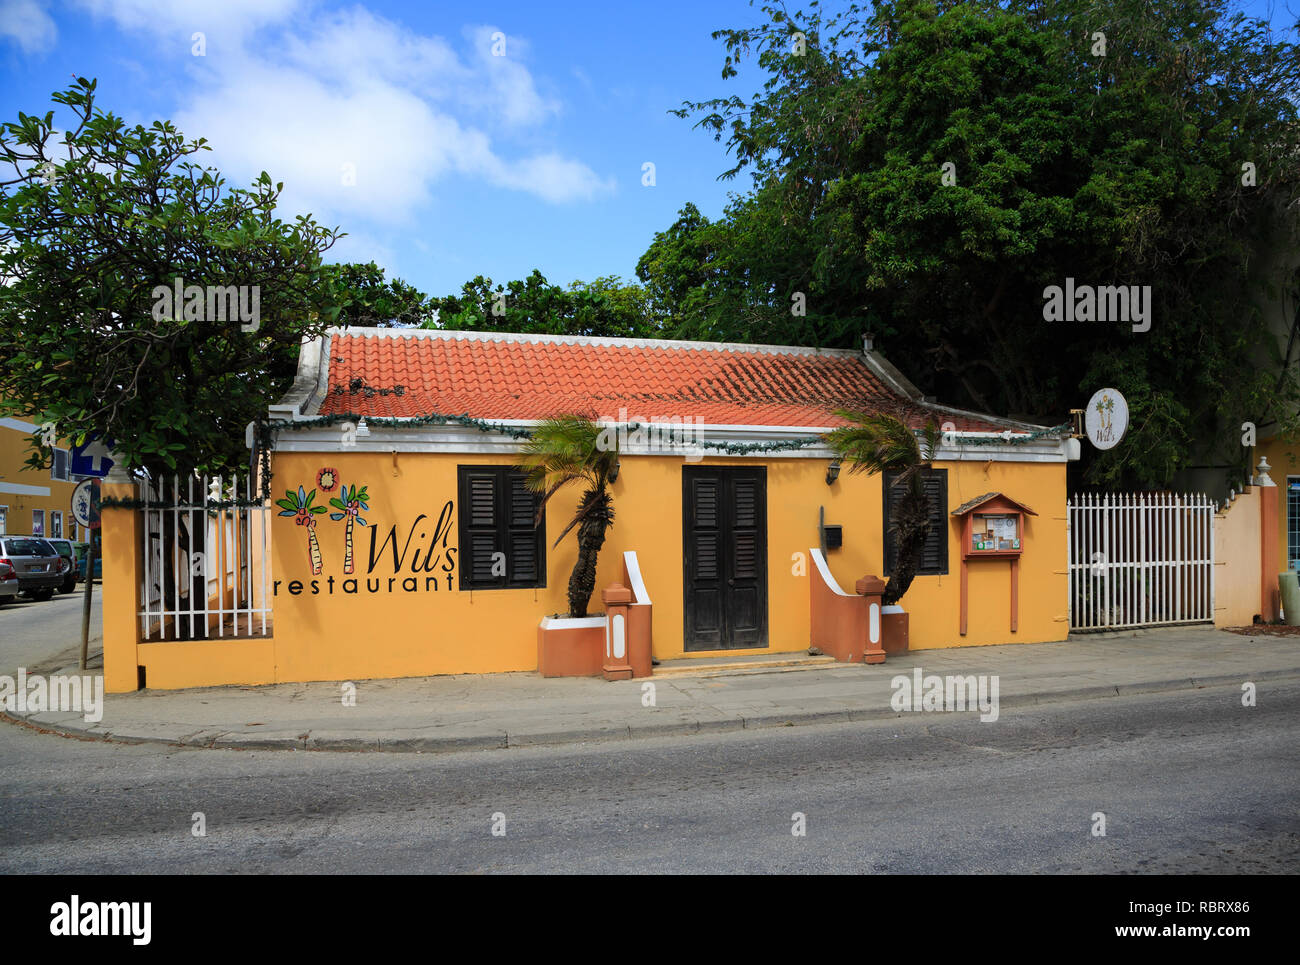 Ristorante Wils in Bonaire Foto Stock